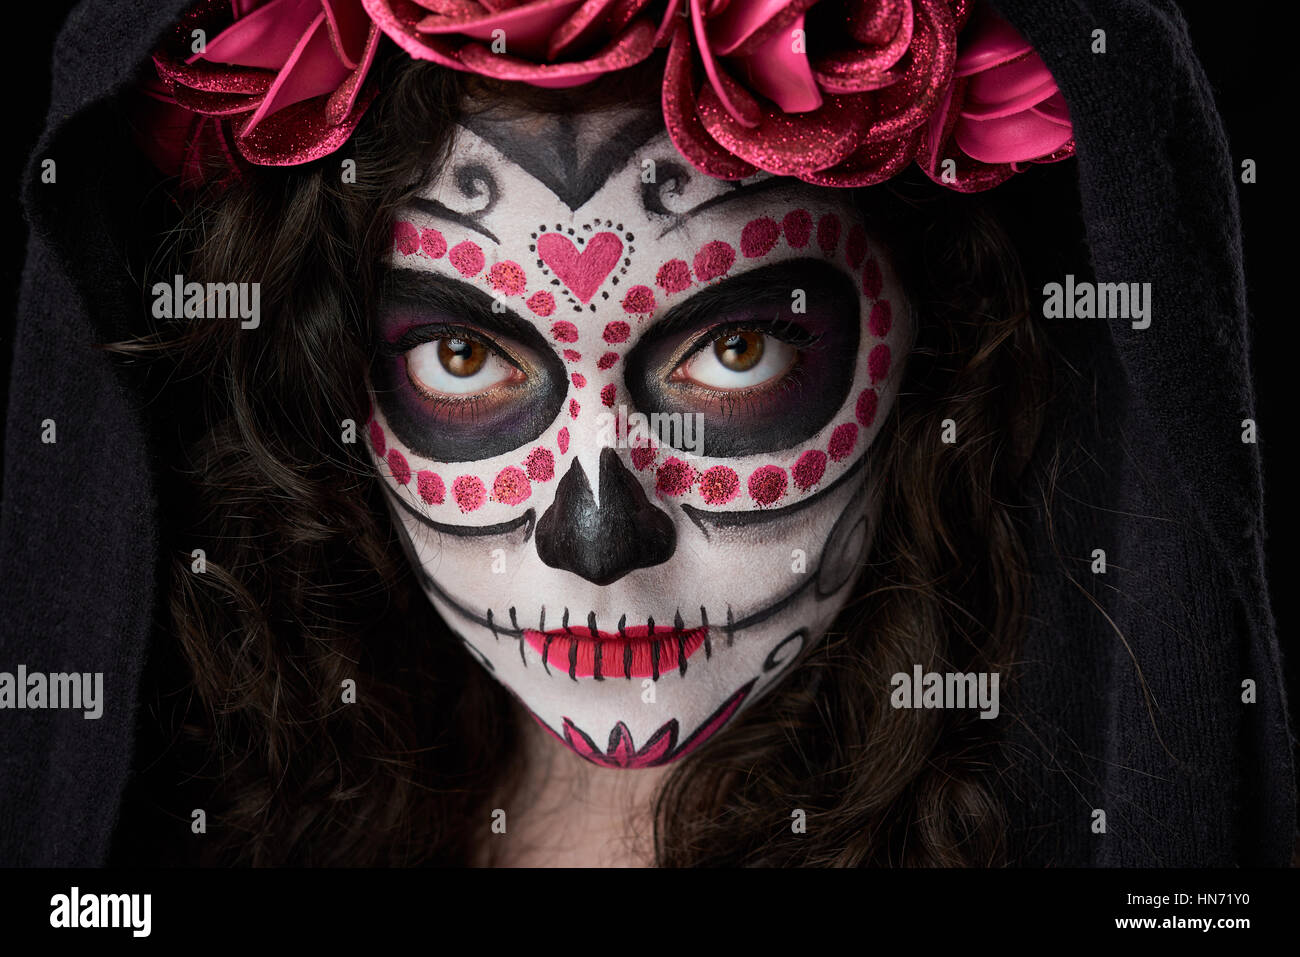 Nahaufnahme von Make-up-Totenkopf auf Gesicht der Frau mit Mantel  Stockfotografie - Alamy